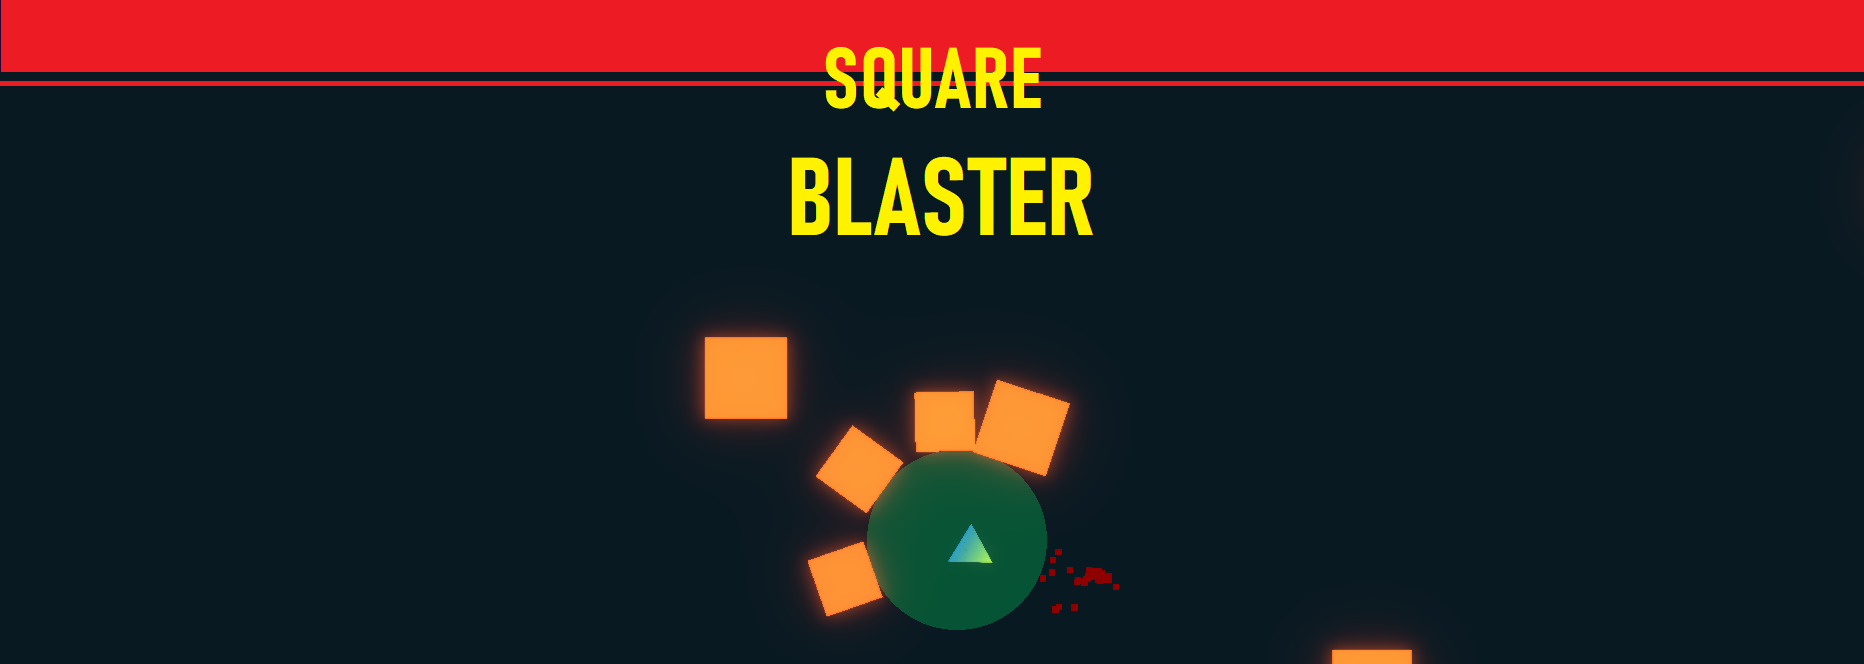 Square Blaster